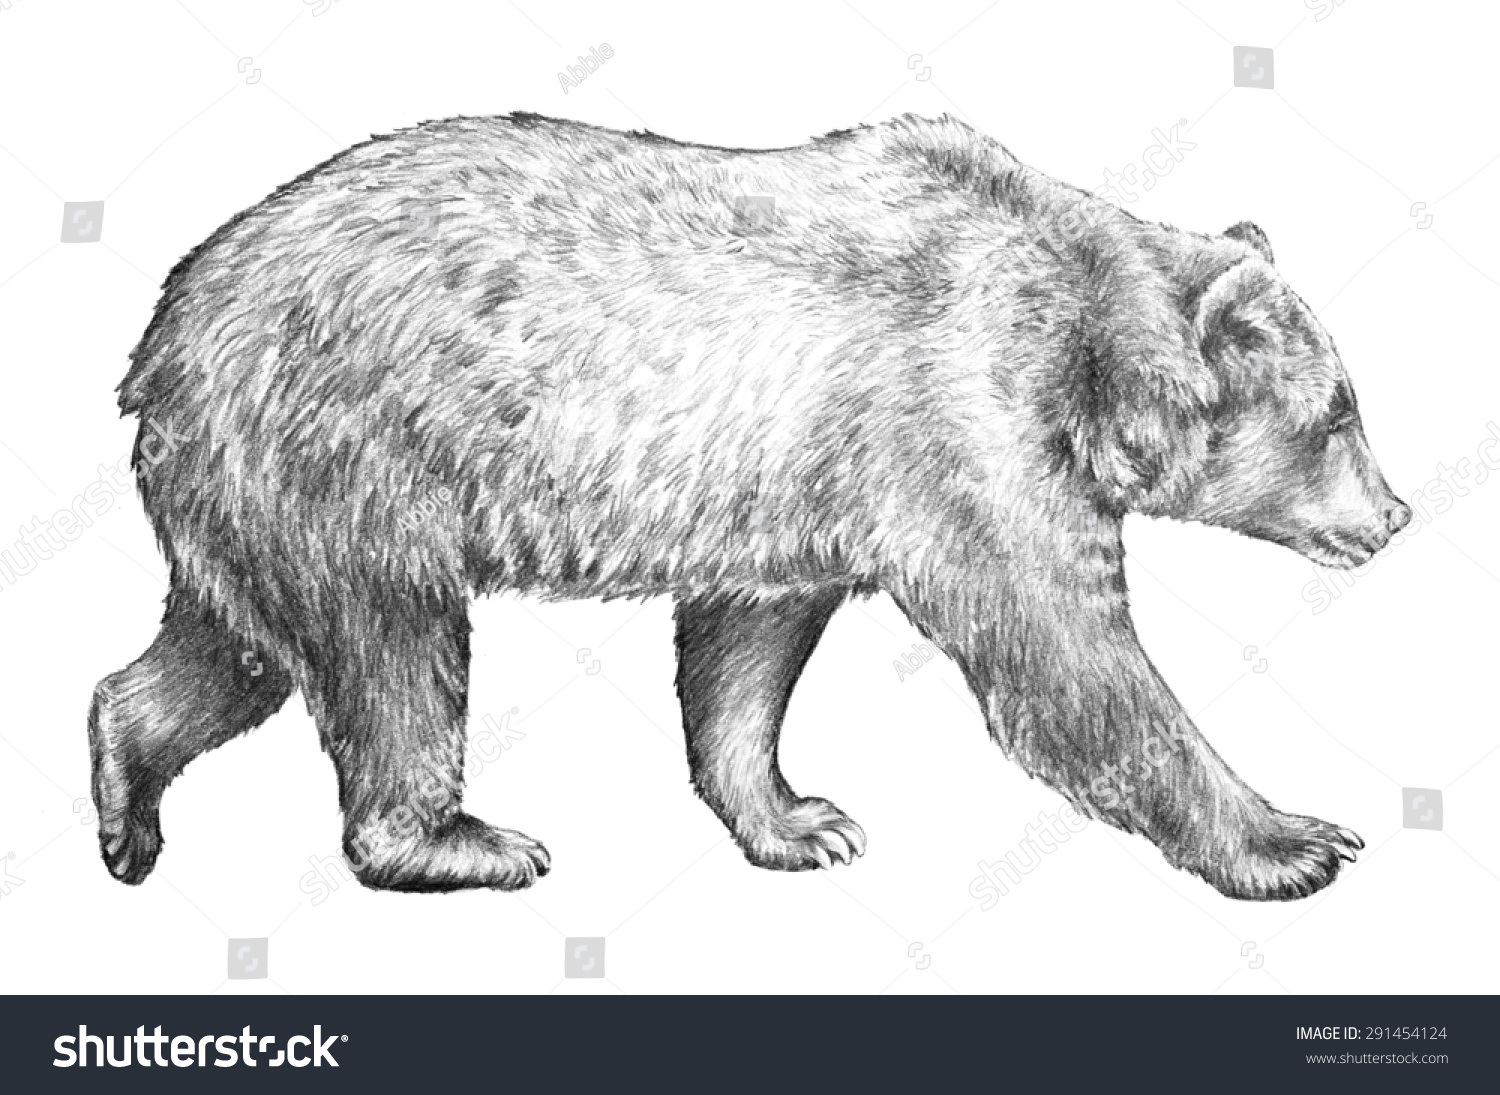 危险的野生动物,巨大的棕熊,北美的野生动物,熊的速写插图孤立在白色